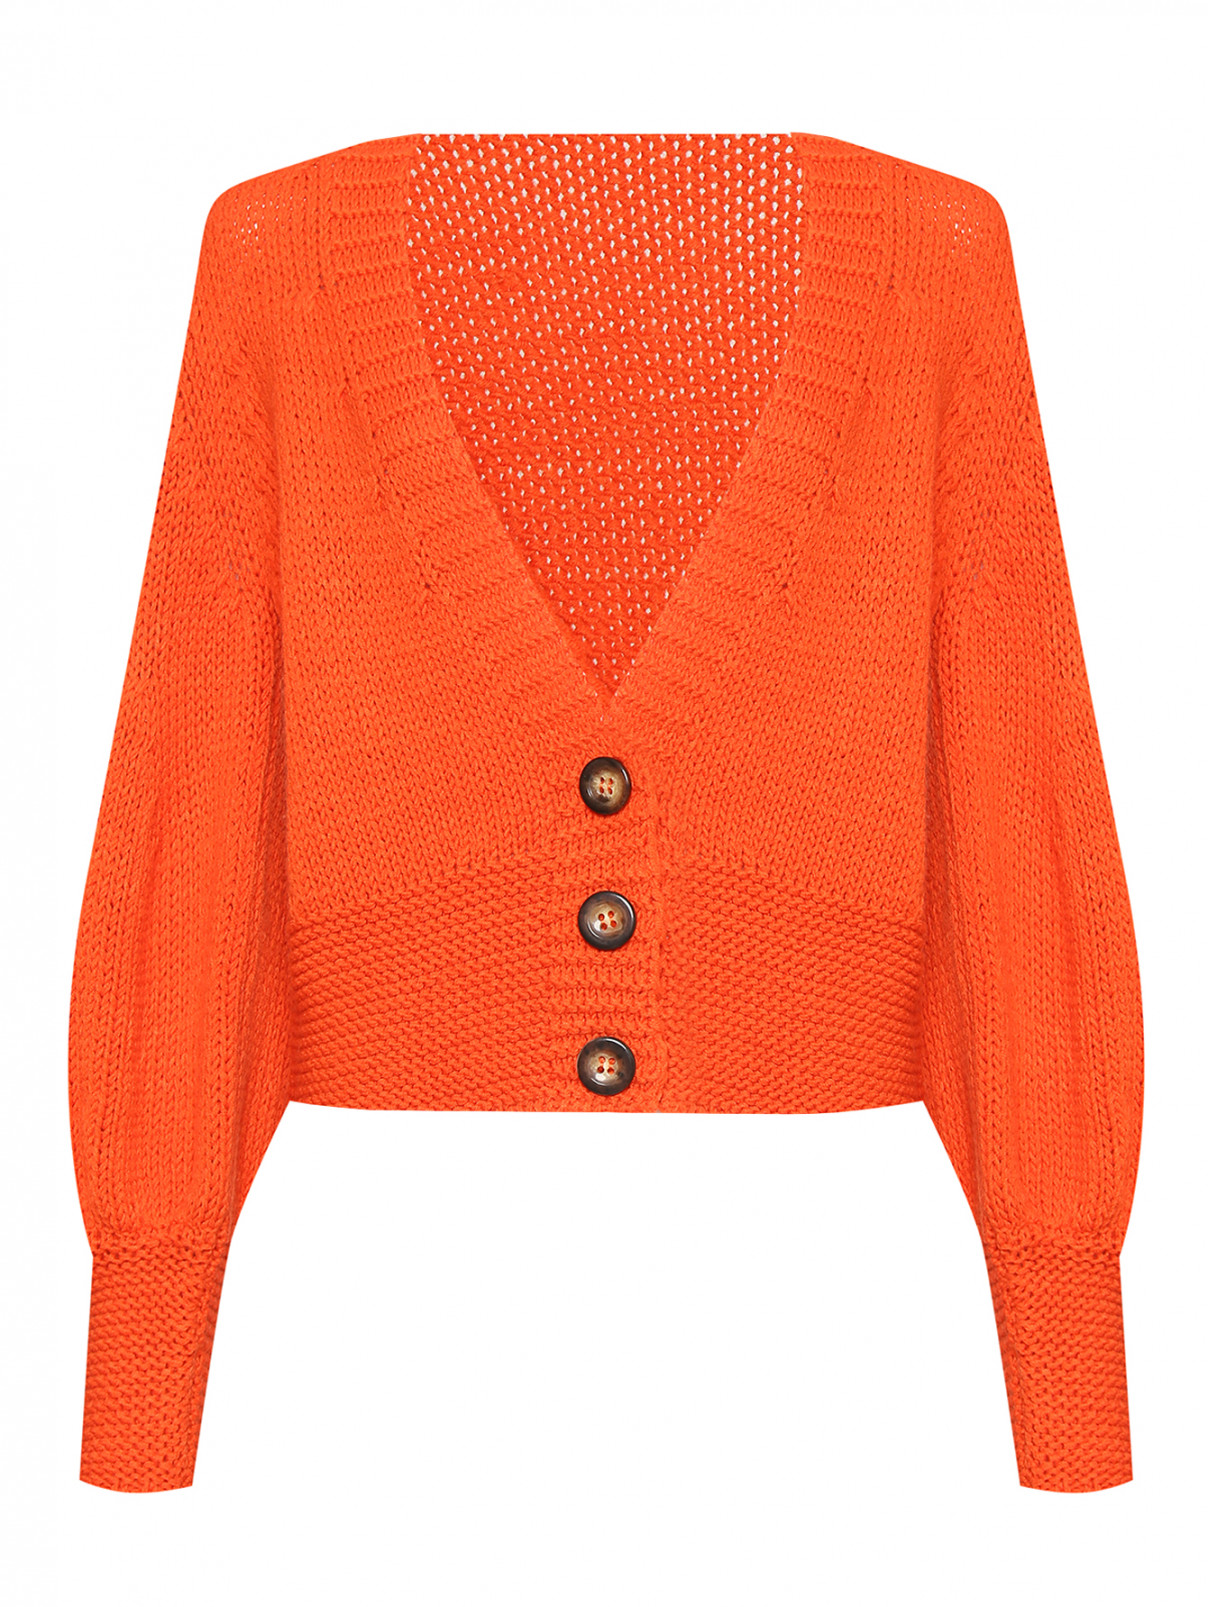 Кардиган из смесовой шерсти с контрастными пуговицами Luisa Spagnoli  –  Общий вид  – Цвет:  Оранжевый